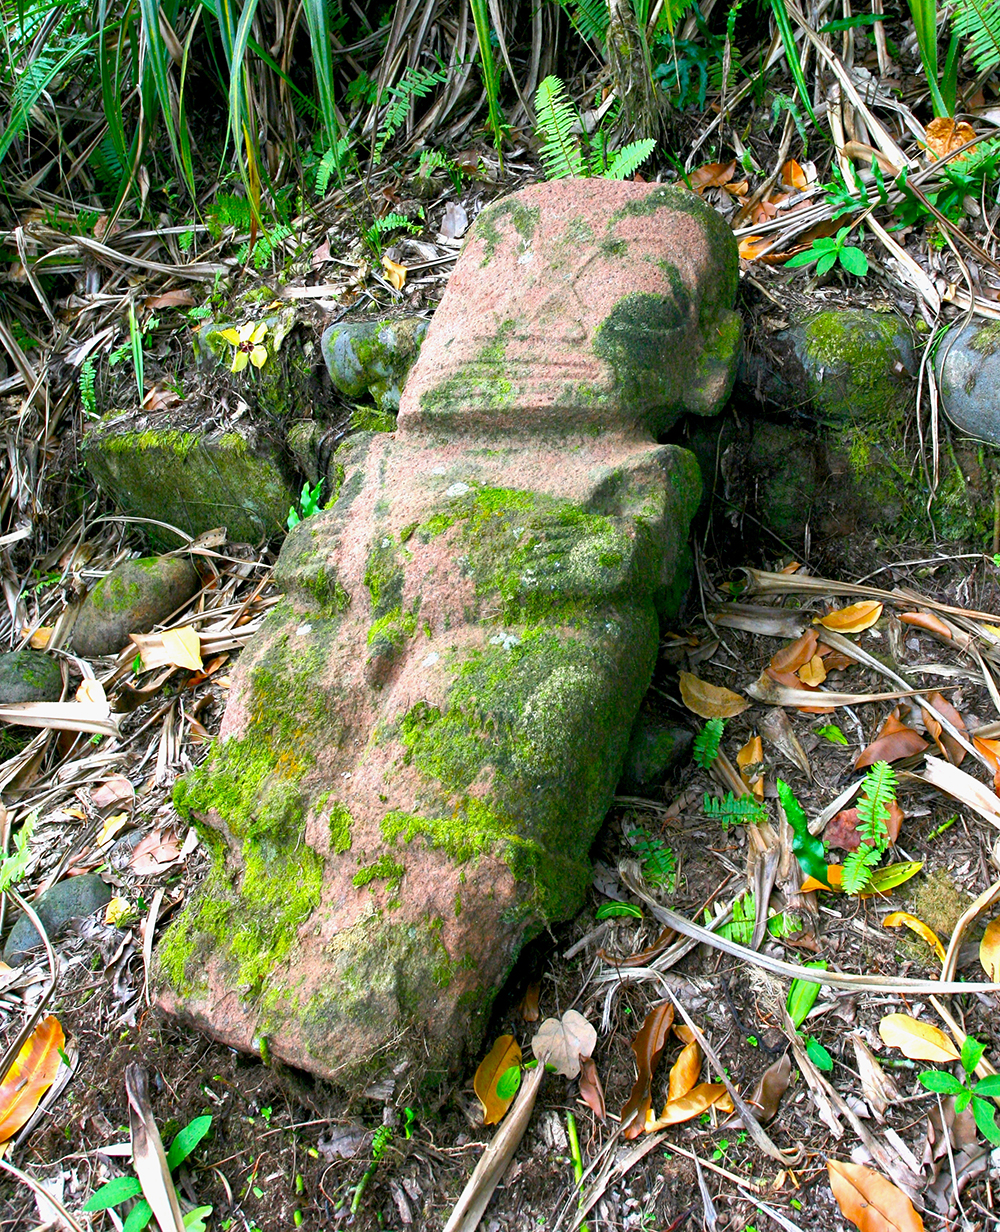 Oublié pendant longtemps, hors des circuits touristiques, voici le tiki sans nom de la haute vallée de Puamau, à Hiva Oa.